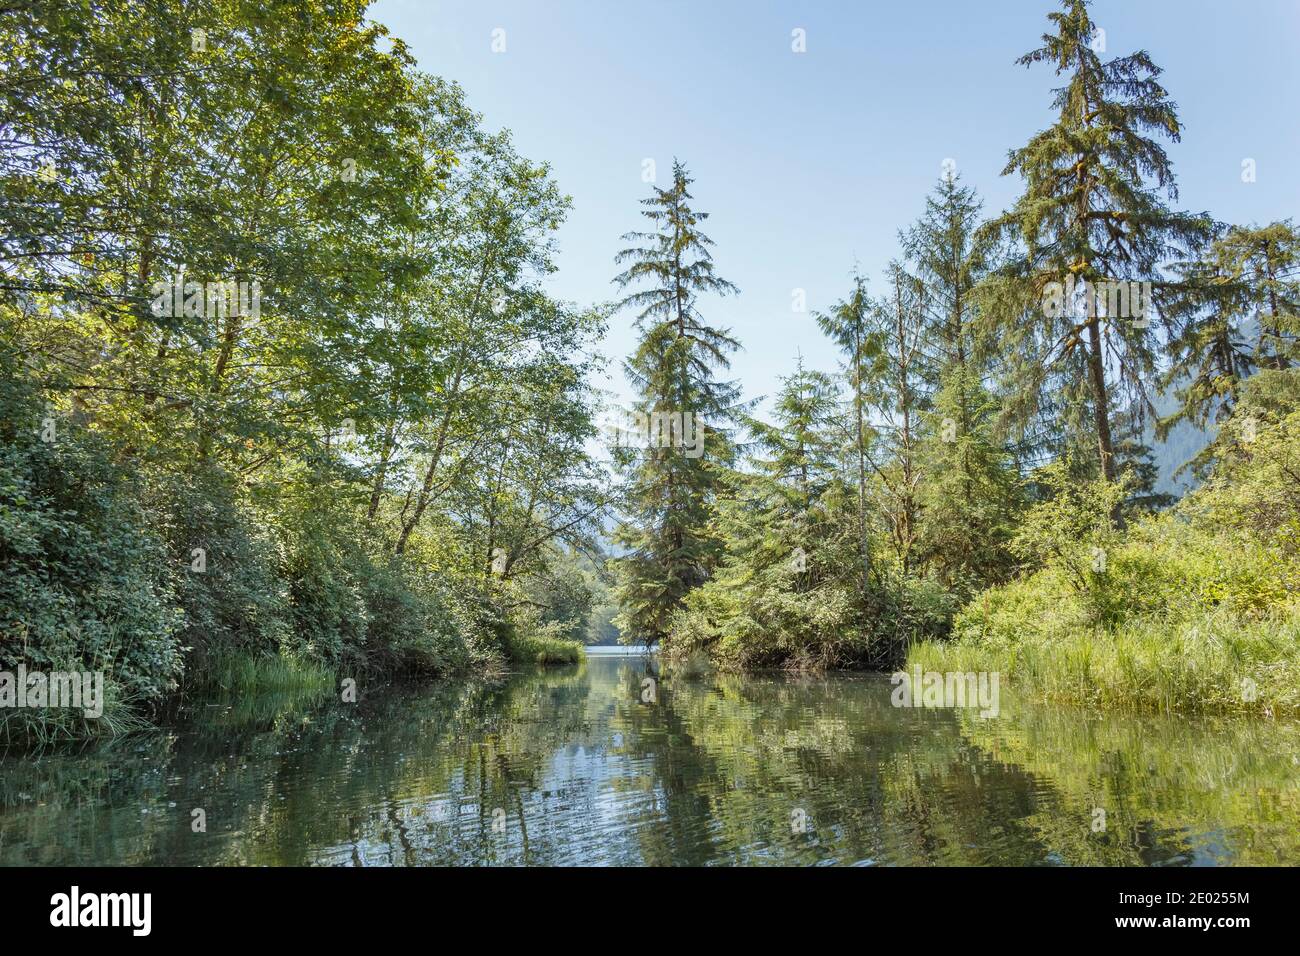 Blaues Wasser und Himmel treffen auf üppige grüne Vegetation und Bäume am Ufer der Flussmündung des Tzoonie River, einem Wildnisgebiet in British Columbia (Sommer). Stockfoto